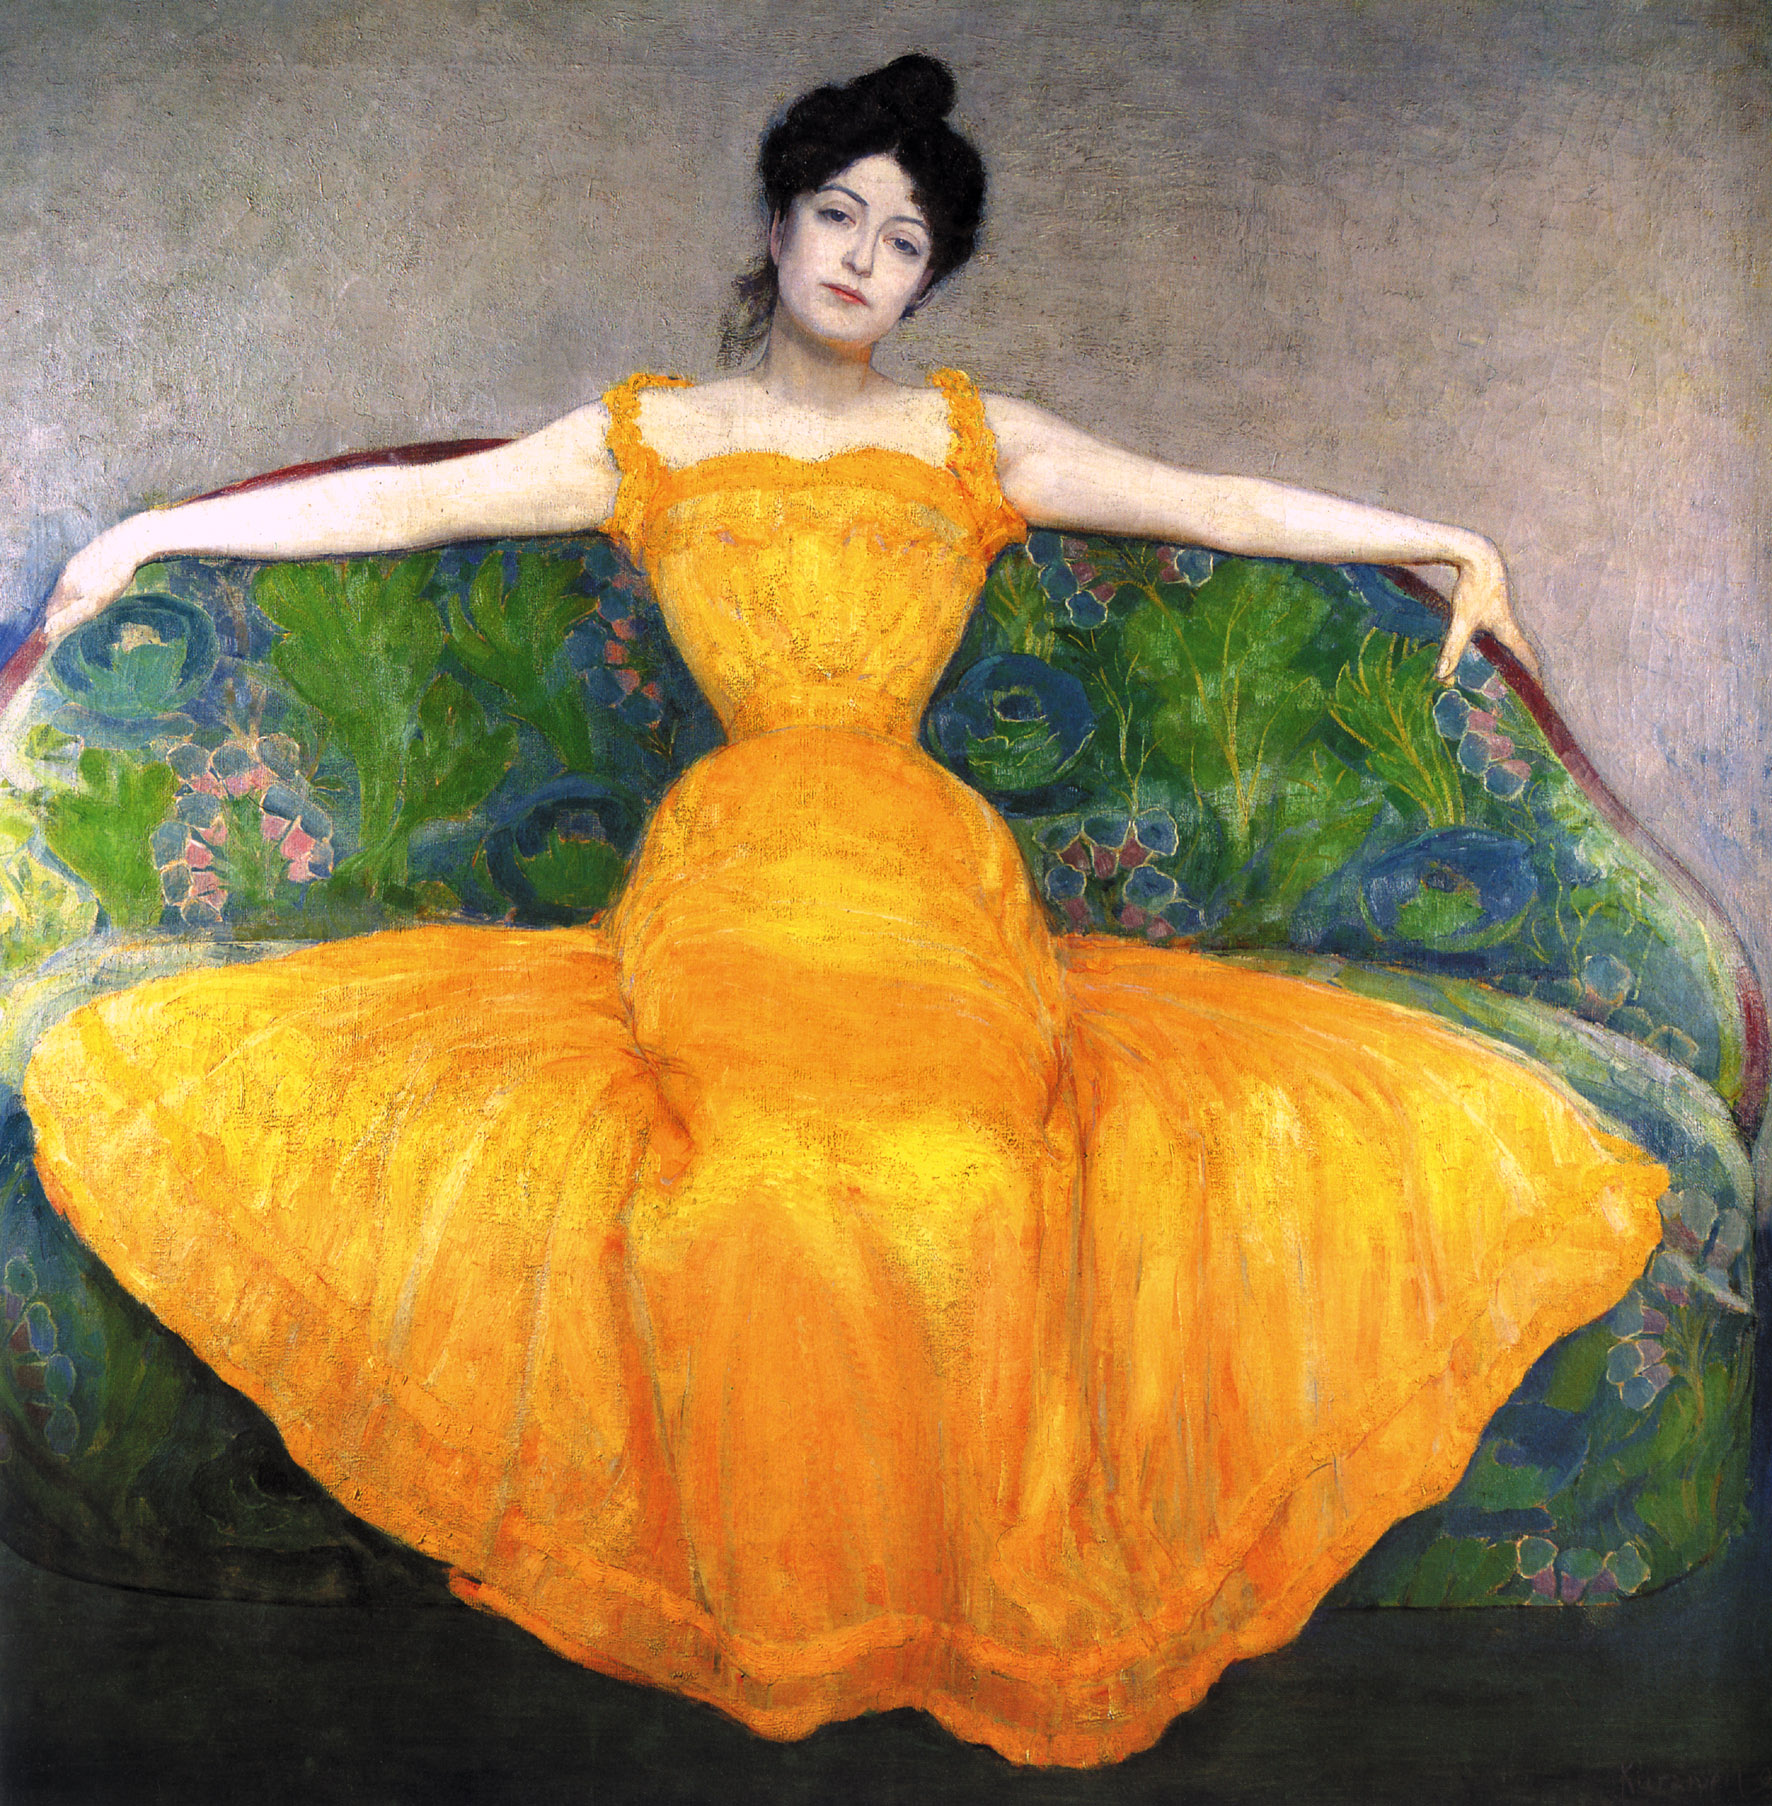 Vrouw in het geel by Max Kurzweil - 1899 Wien Museum